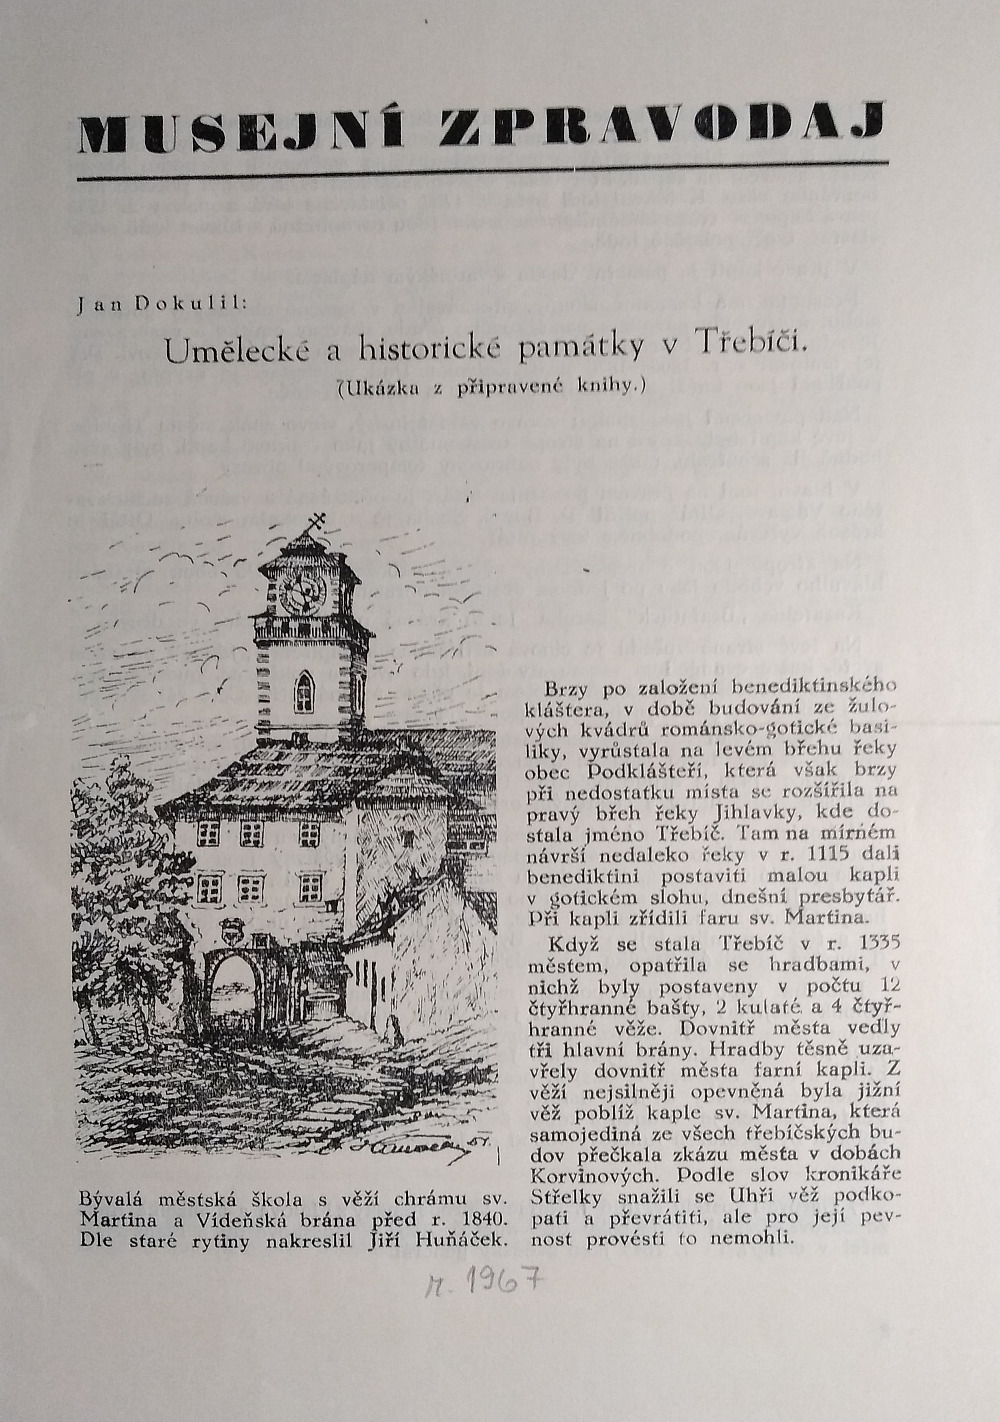 Musejní  zpravodaj - Umělecké a historické památky v Třebíči - Ukázka z připravené knihy